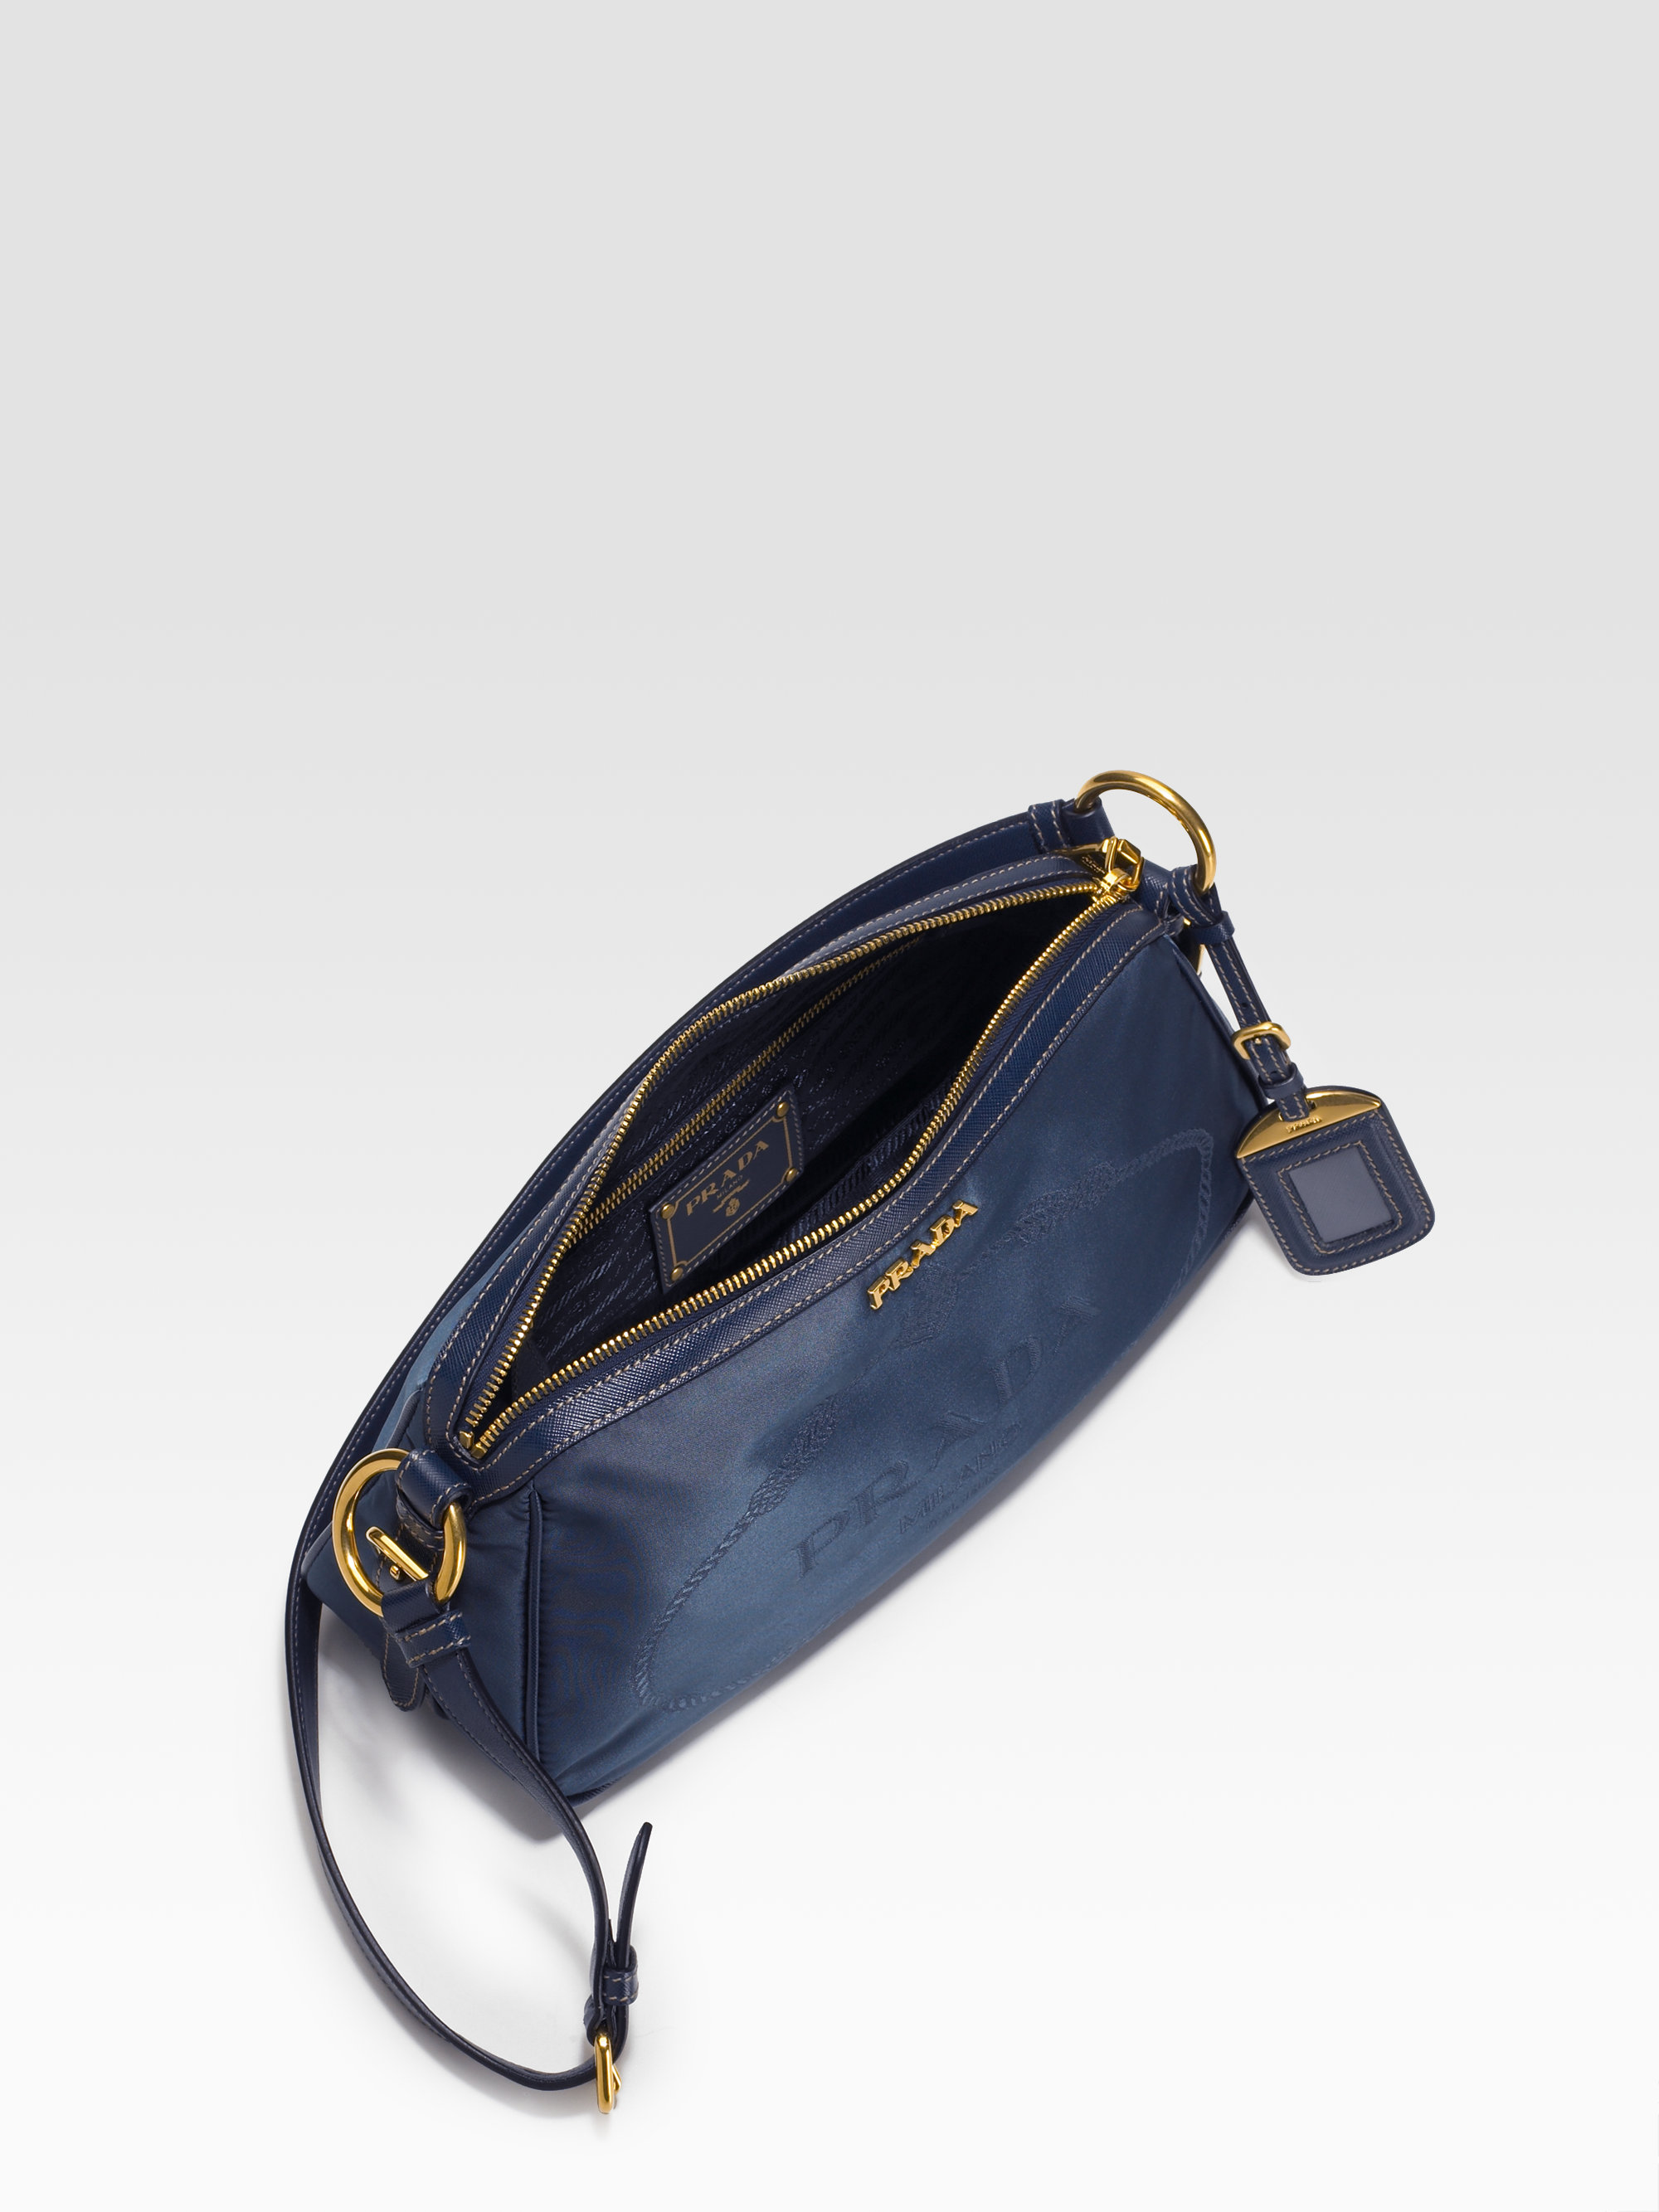 Prada Nylon Saffiano Leather Shoulder Bag in Blue (black) | Lyst  